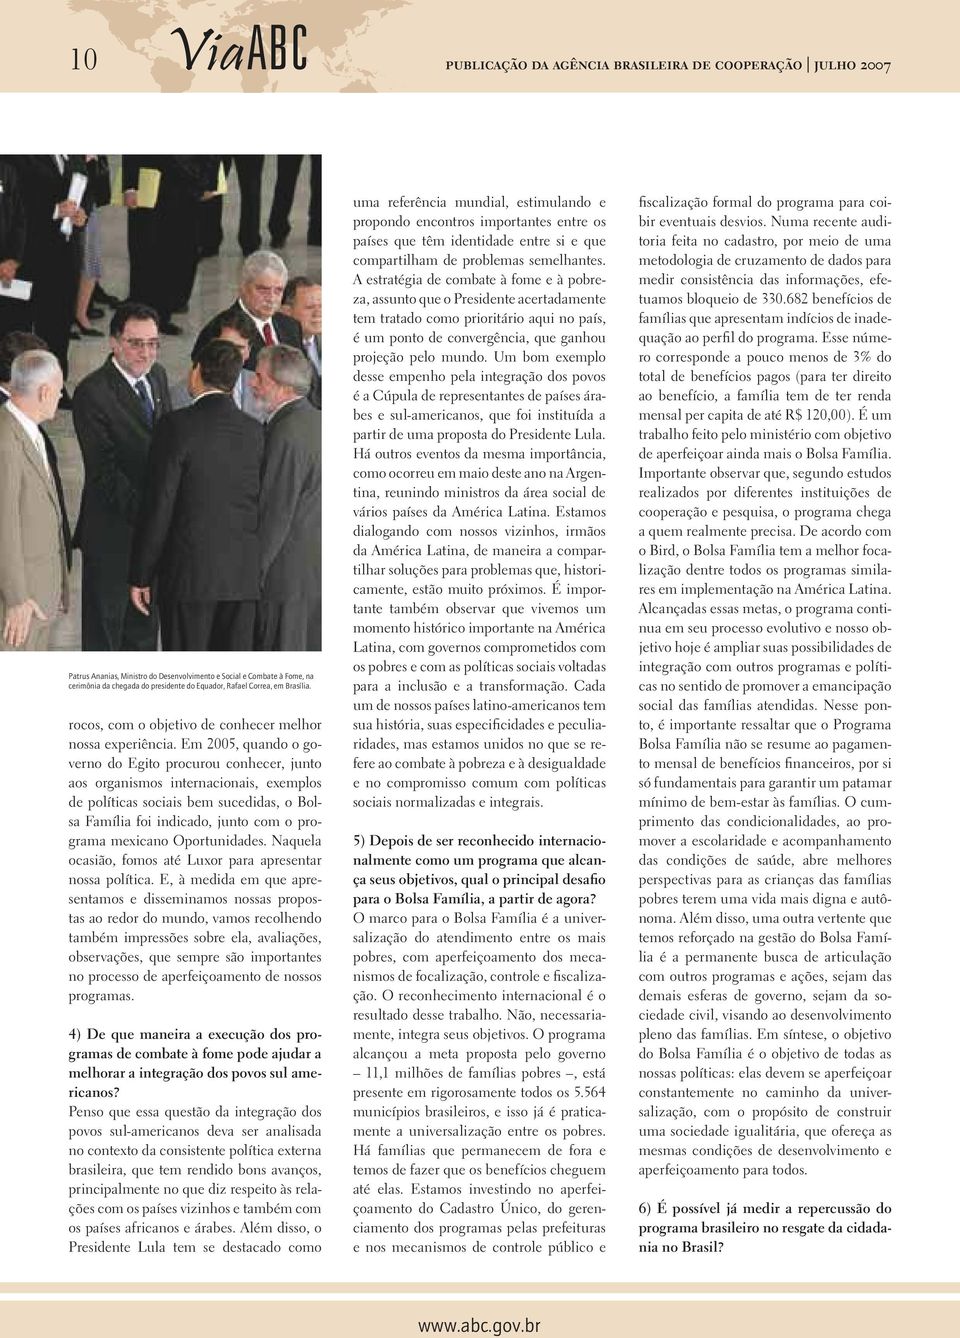 Em 2005, quando o governo do Egito procurou conhecer, junto aos organismos internacionais, exemplos de políticas sociais bem sucedidas, o Bolsa Família foi indicado, junto com o programa mexicano